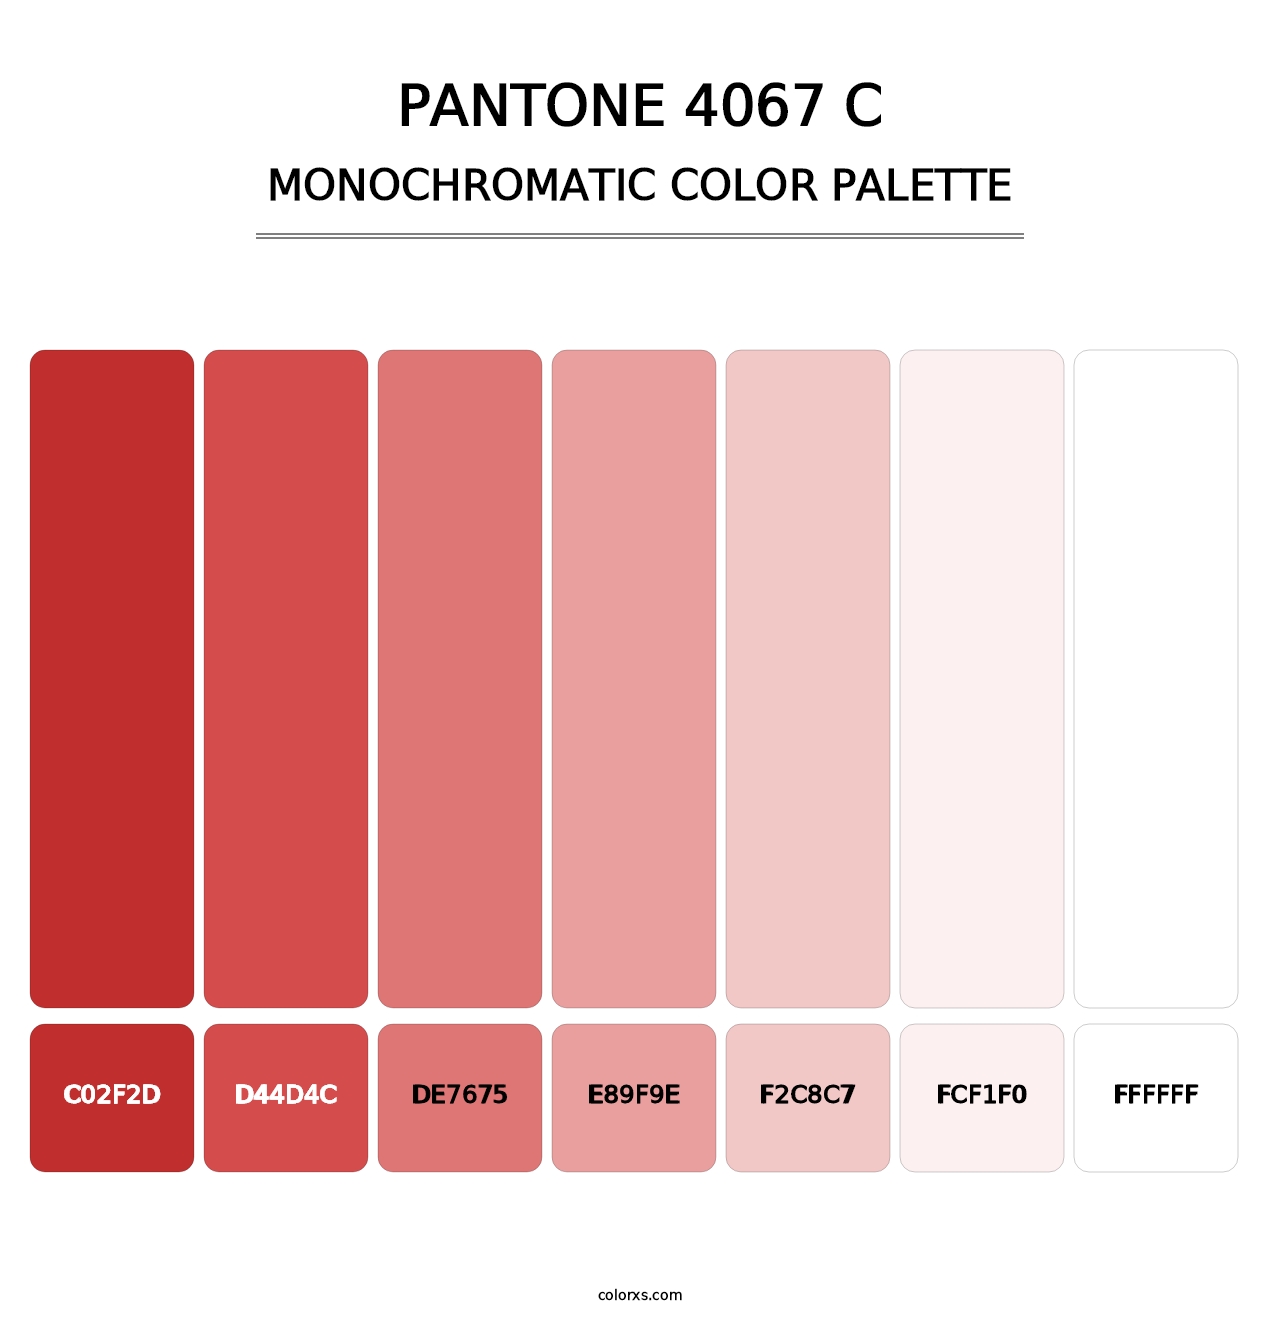 PANTONE 4067 C - Monochromatic Color Palette